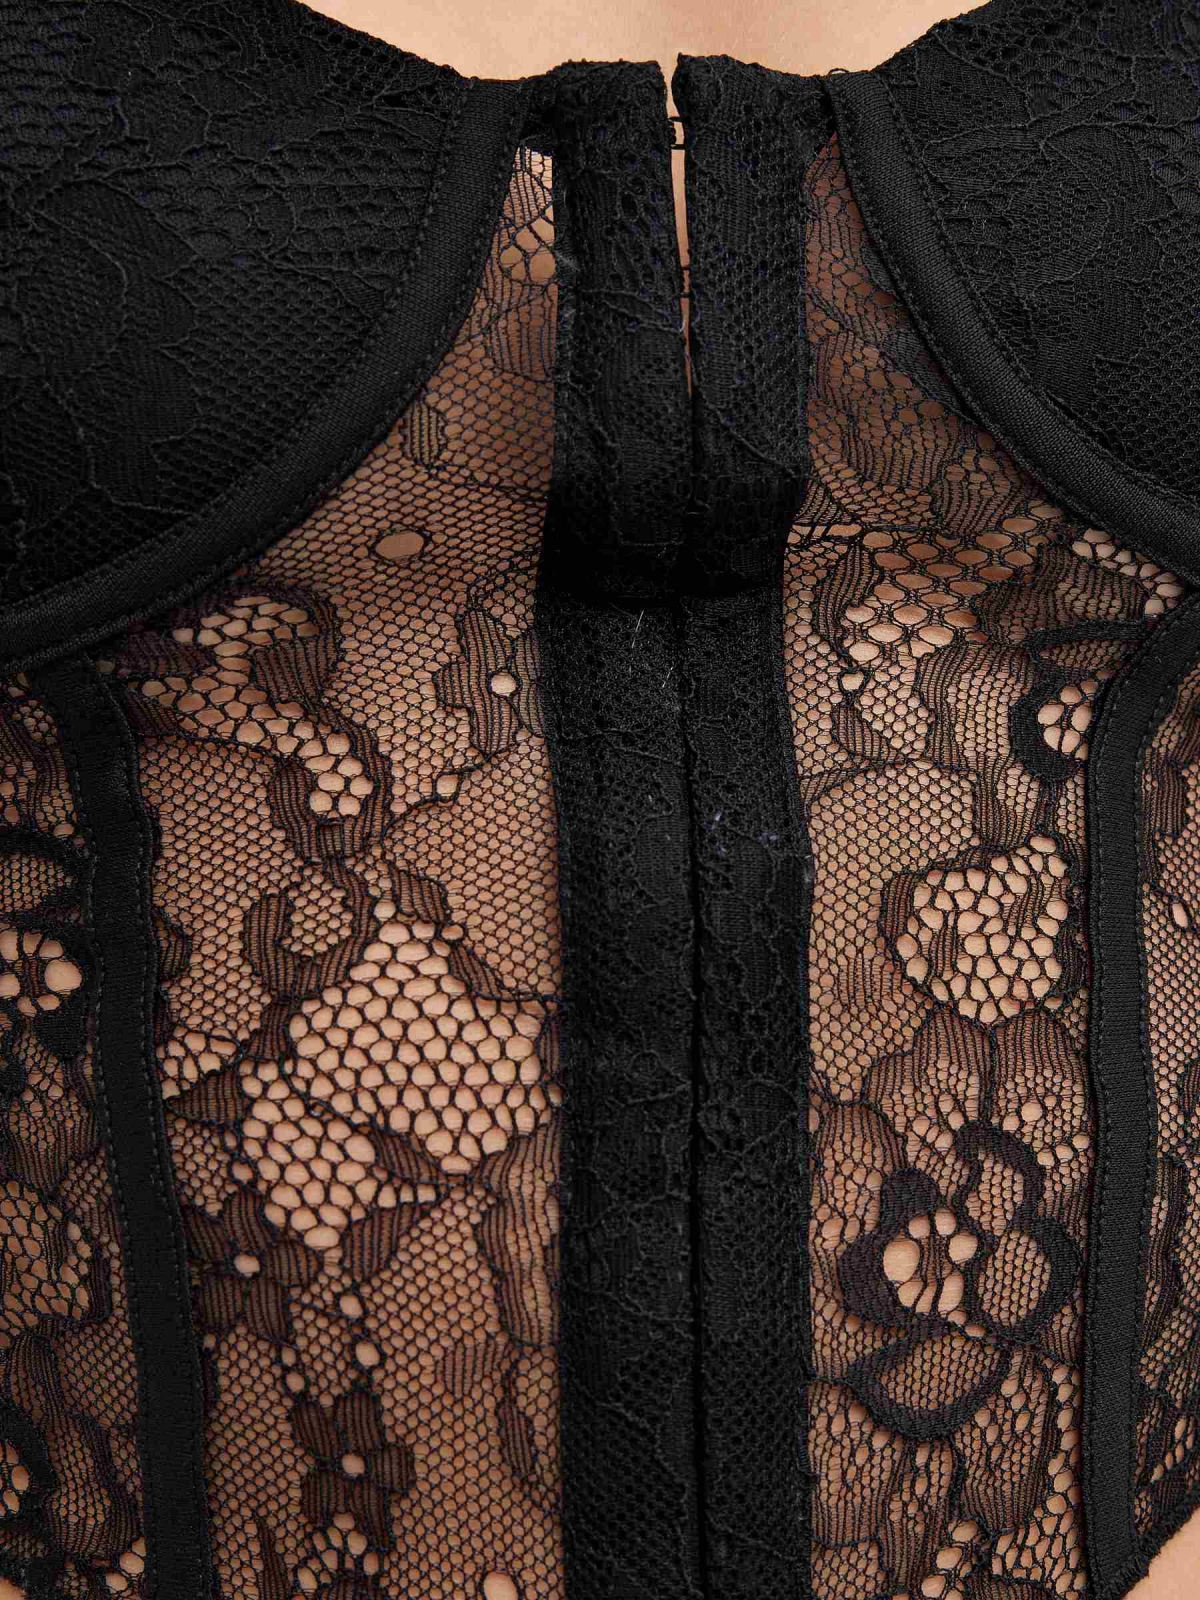 Crop top lace corset black detail view